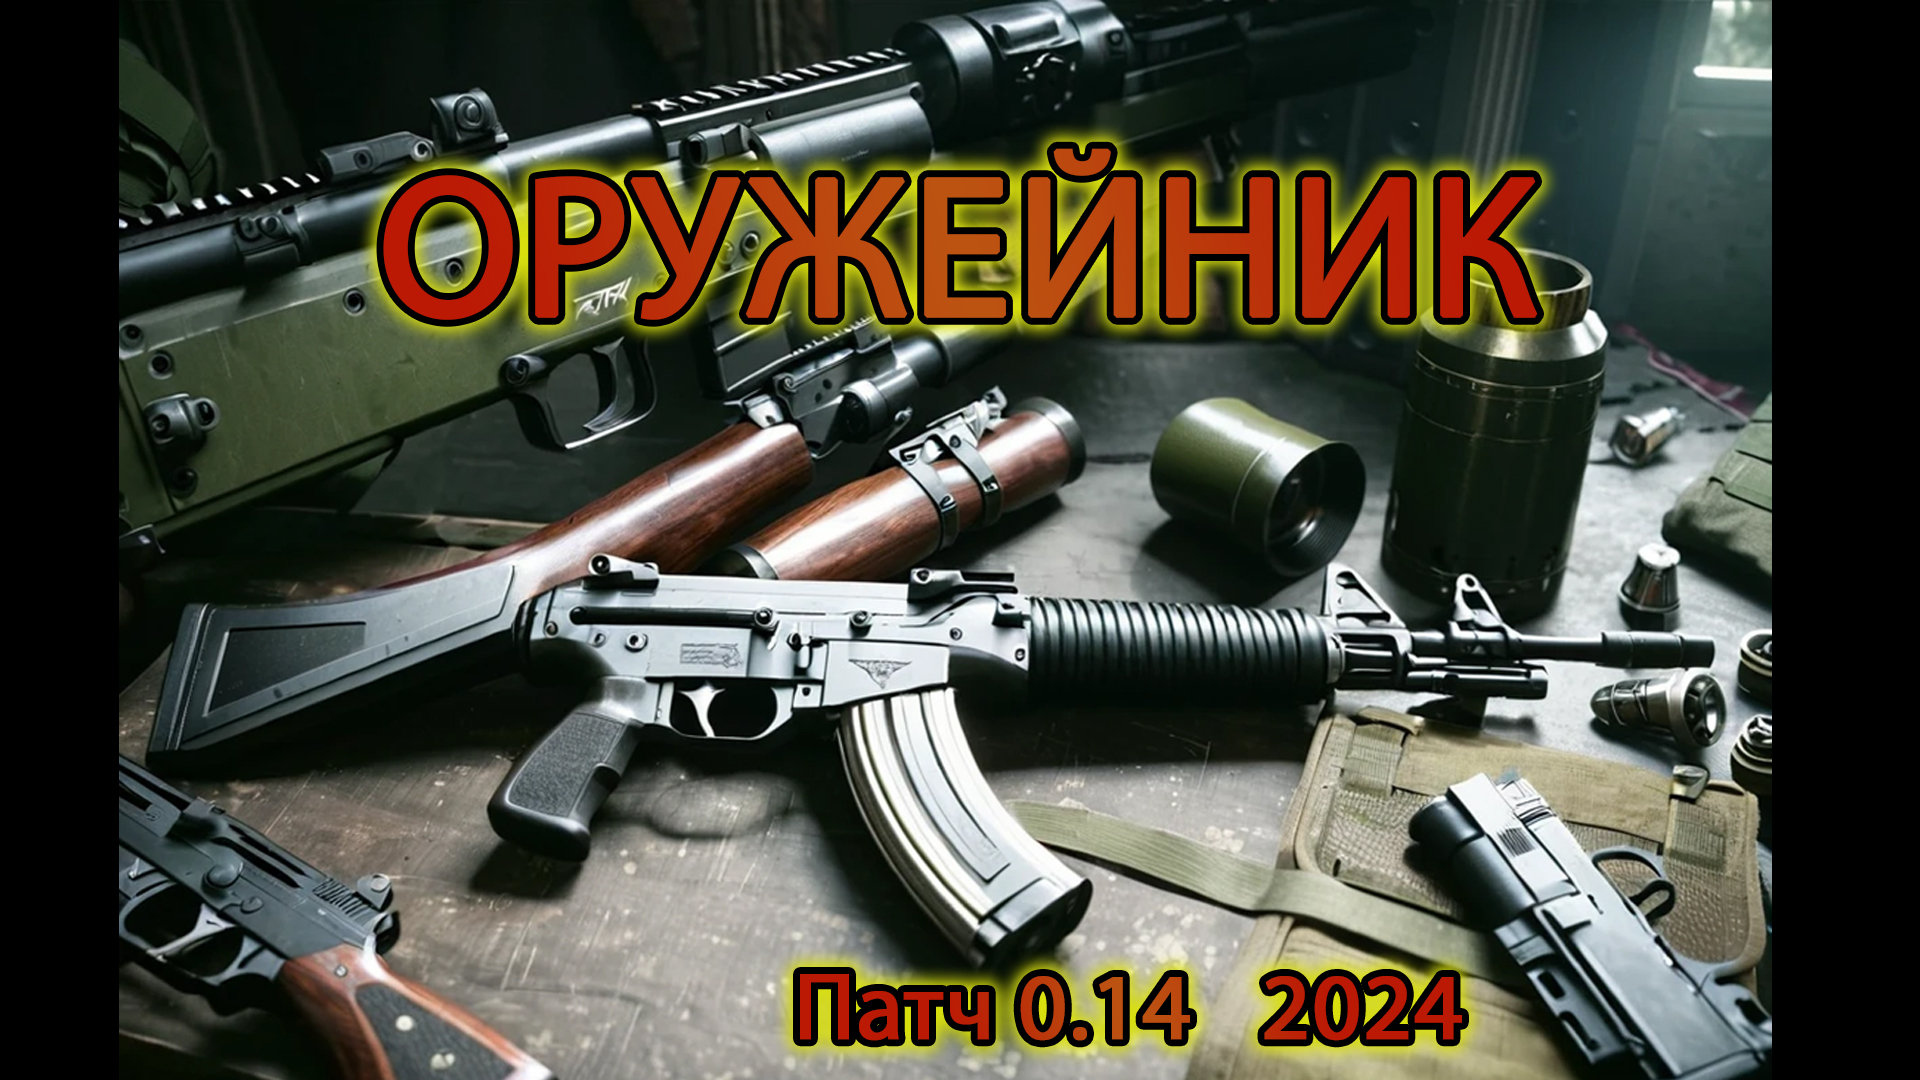 Оружейник часть 3 Патч 0.14.0.1 2024 (video-converter.com)